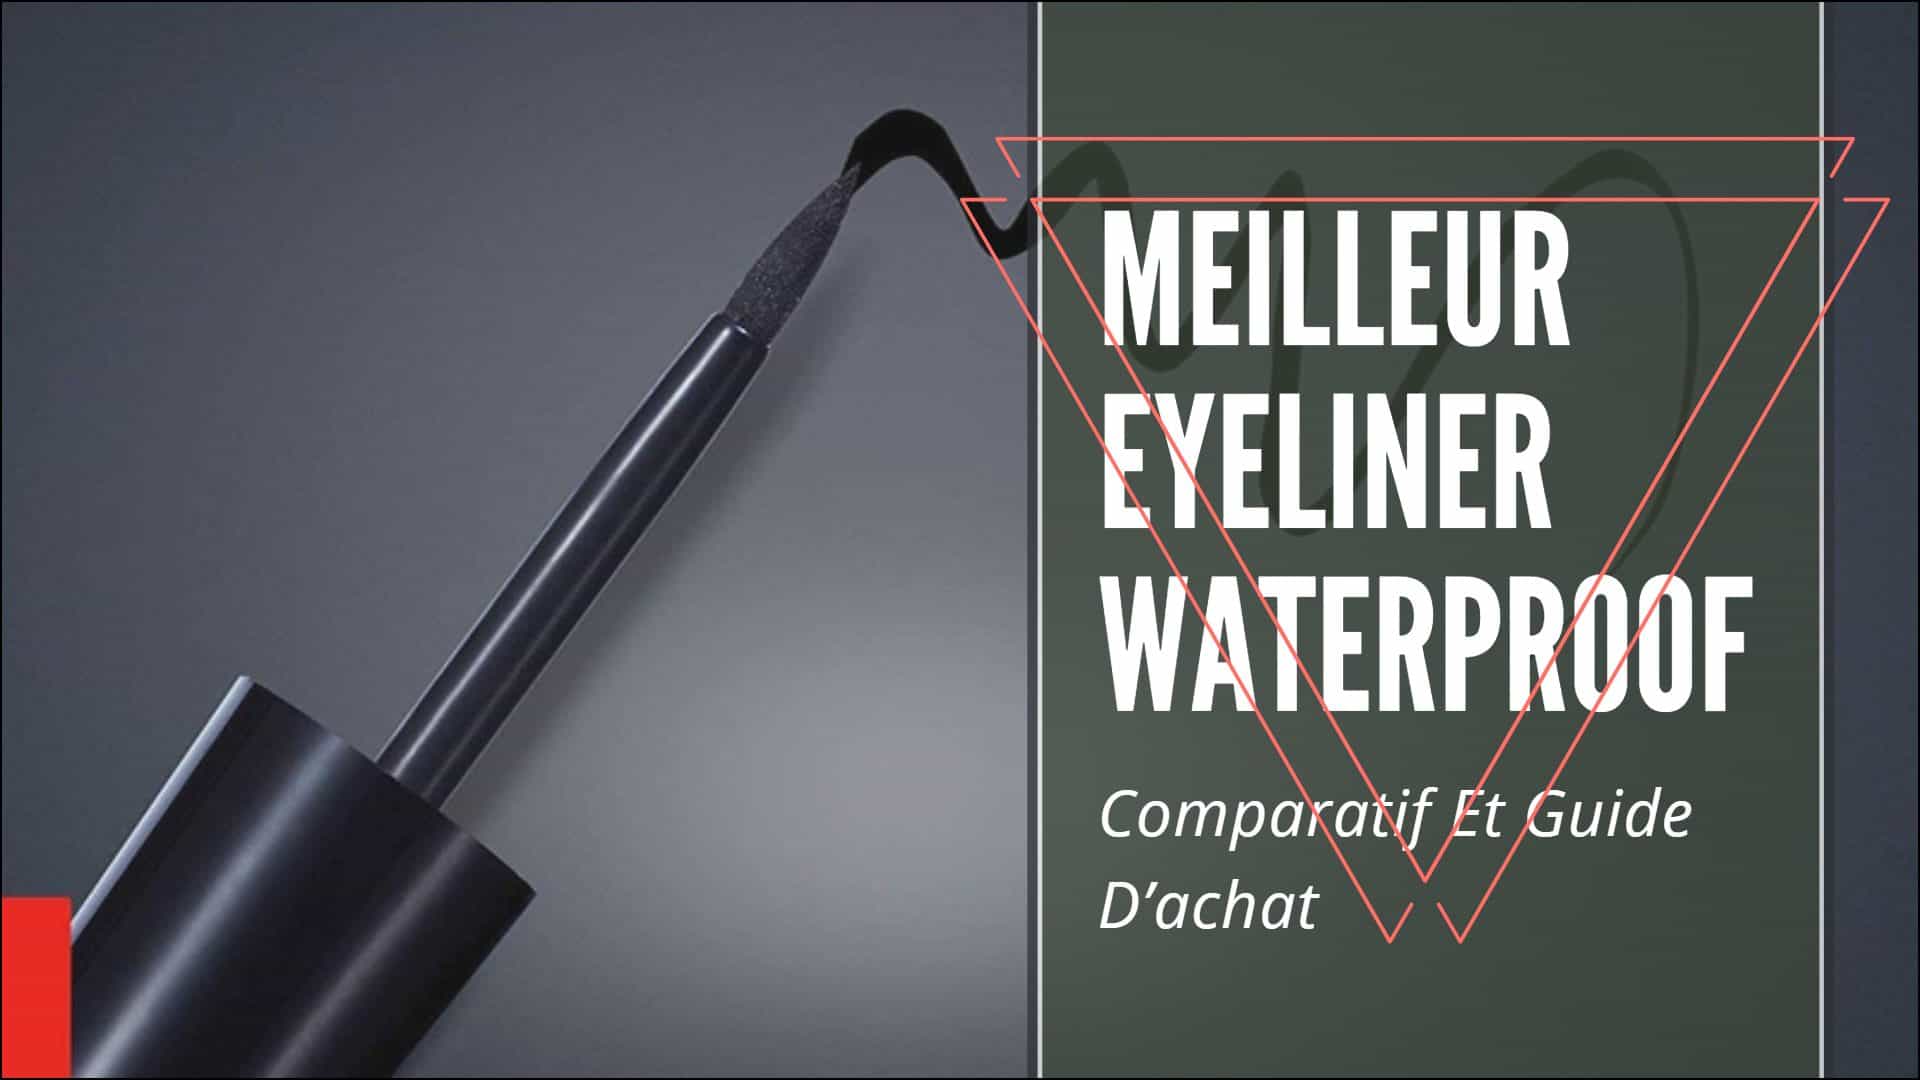 Meilleur Eyeliner Waterproof